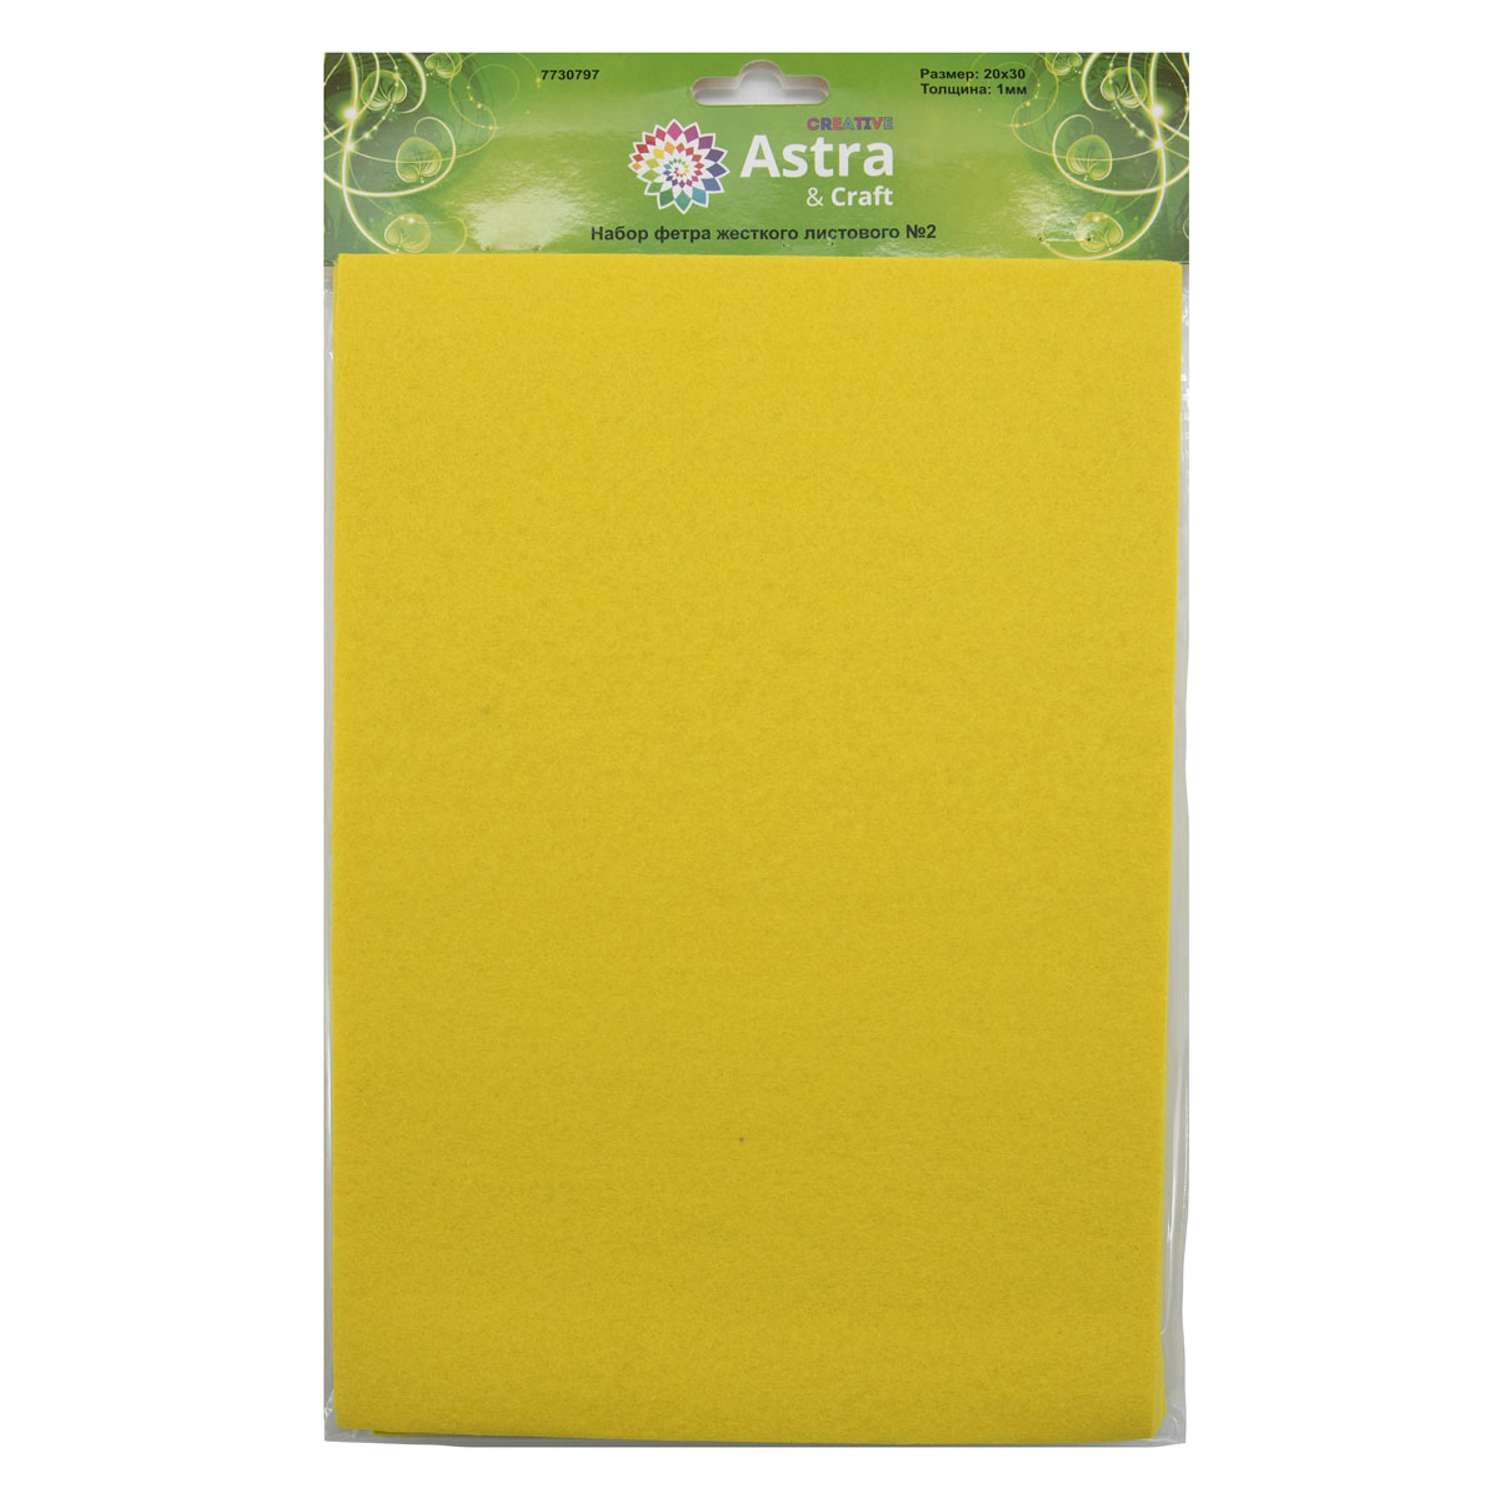 Фетр Astra Craft Листовой жесткий толщина 1 мм размер 20 на 30 см 12шт цвет желтый - фото 3